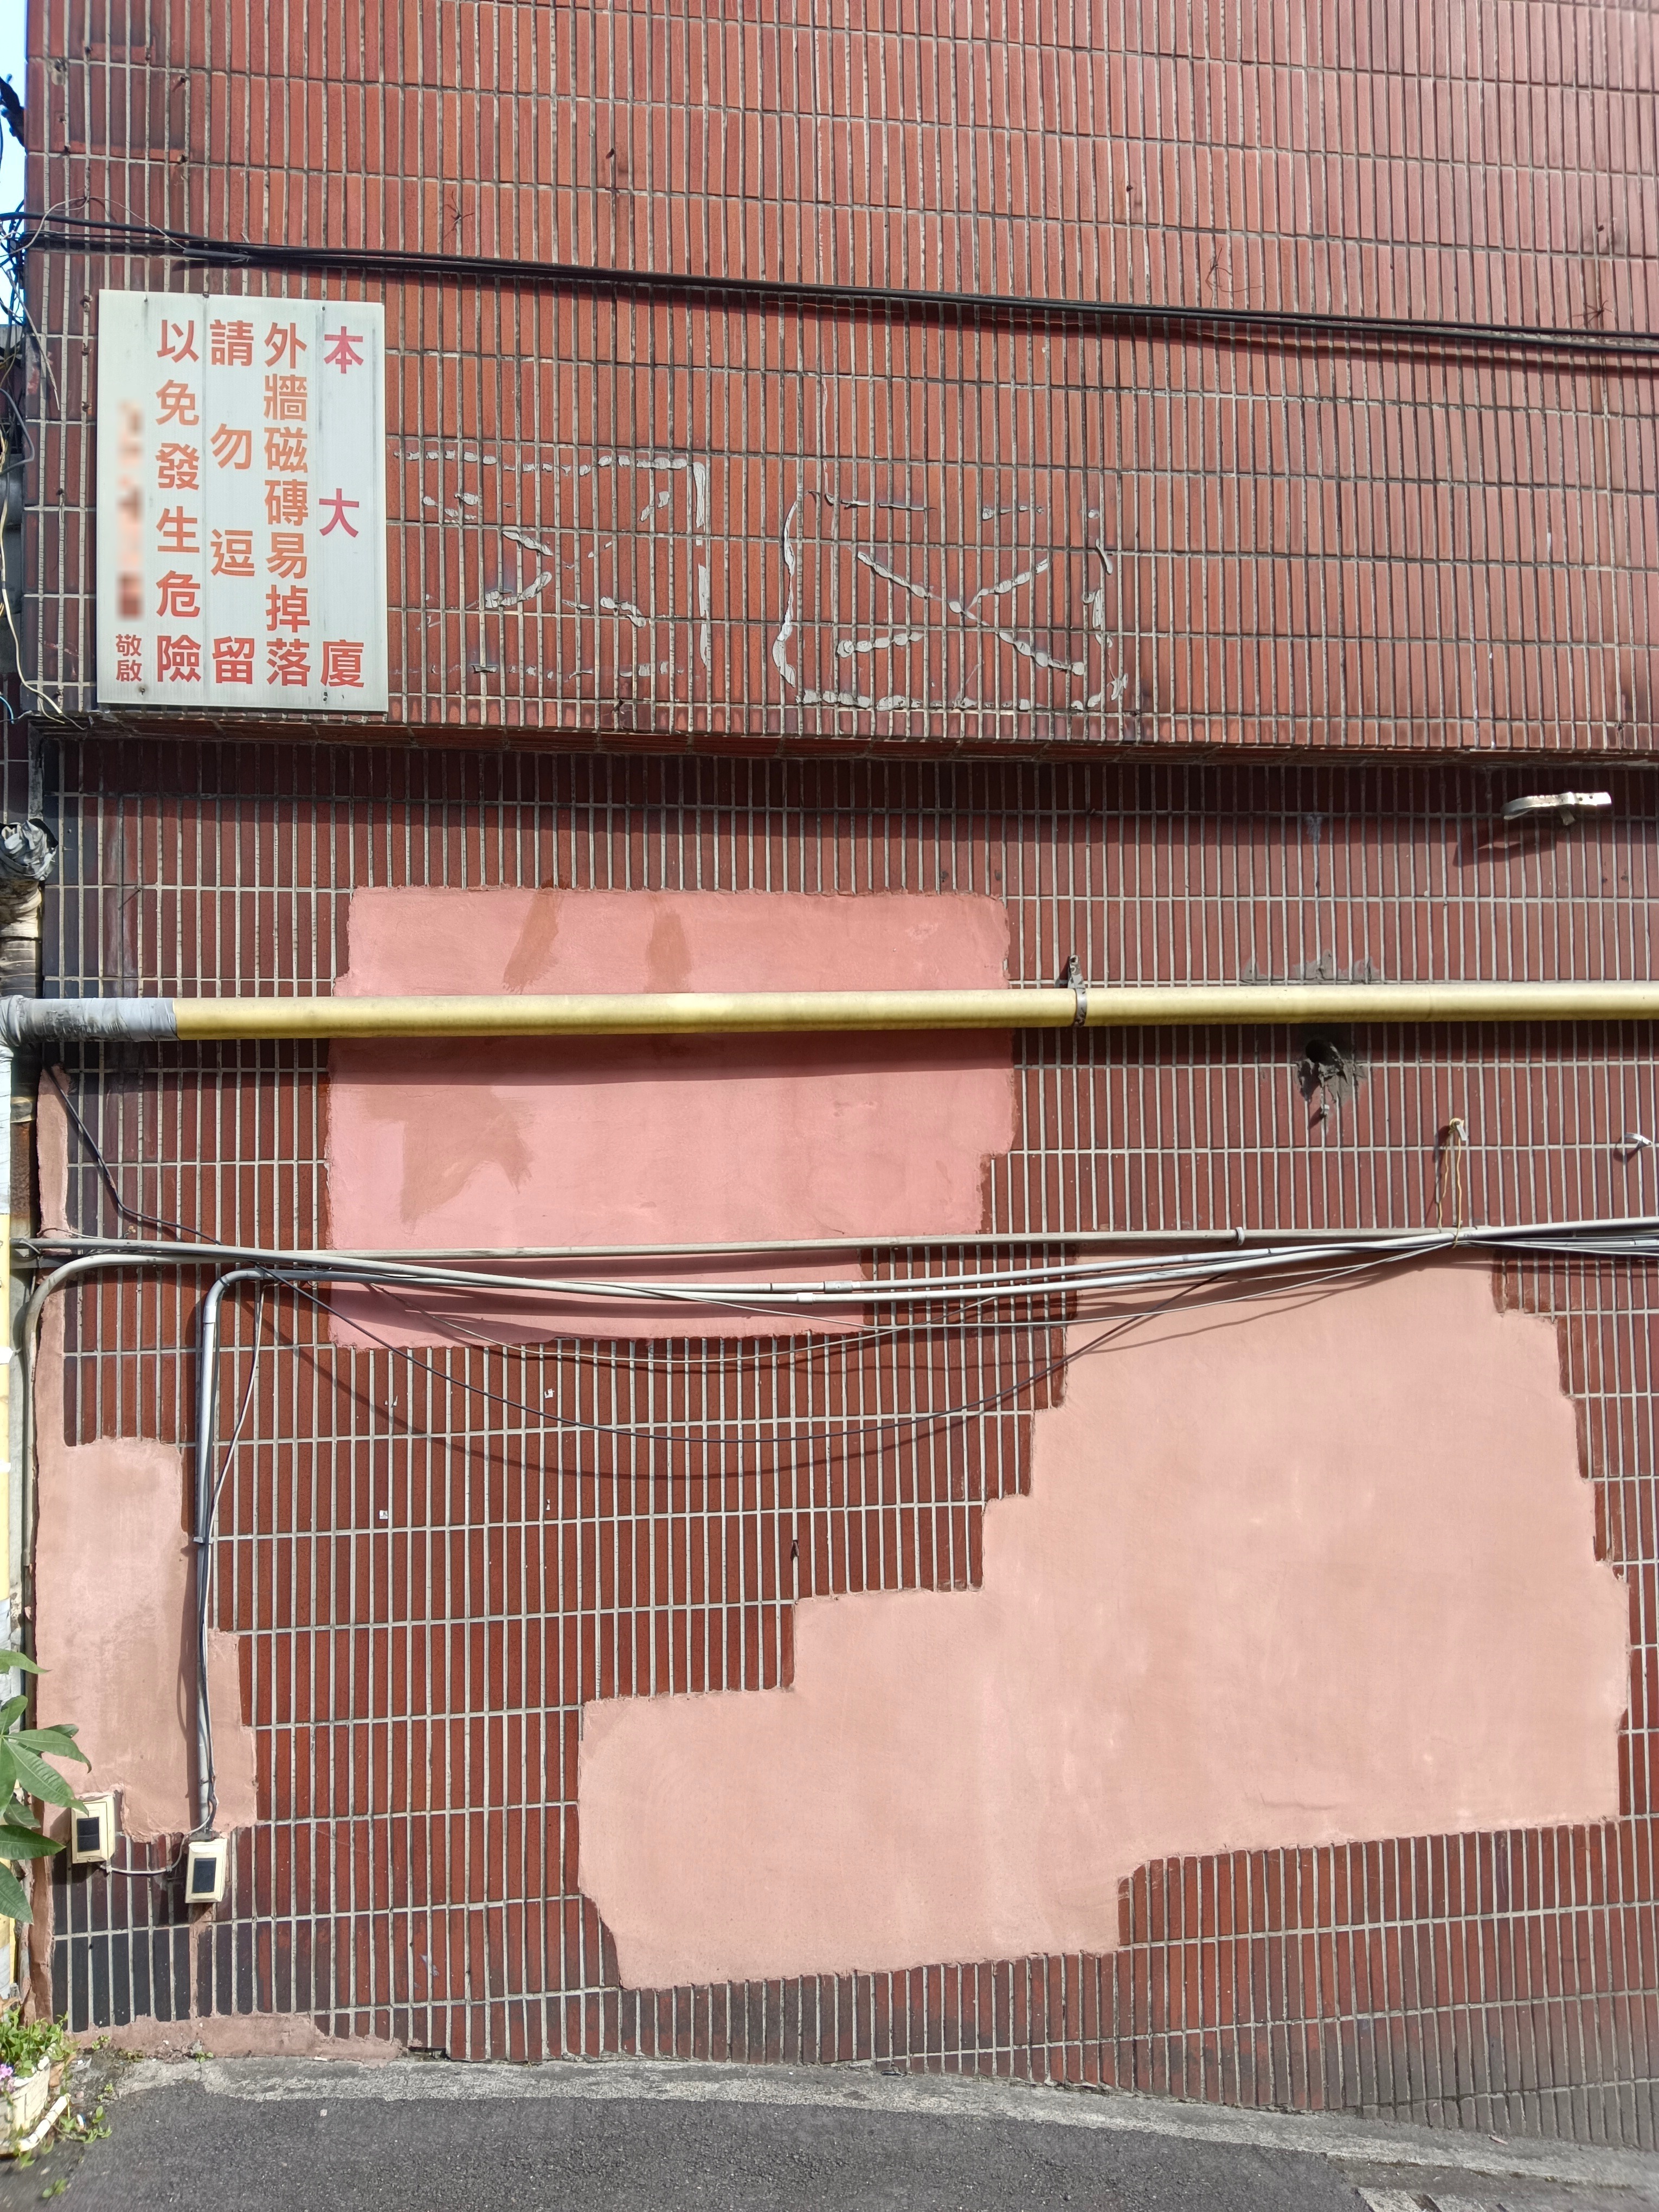 台湾住宅建筑早年砌砖，后来在外墙贴磁砖属湿式工法；若施工不当，或常年受气候影响品质，就可能衍生「磁砖雨」伤人。记者邱瑞杰／摄影